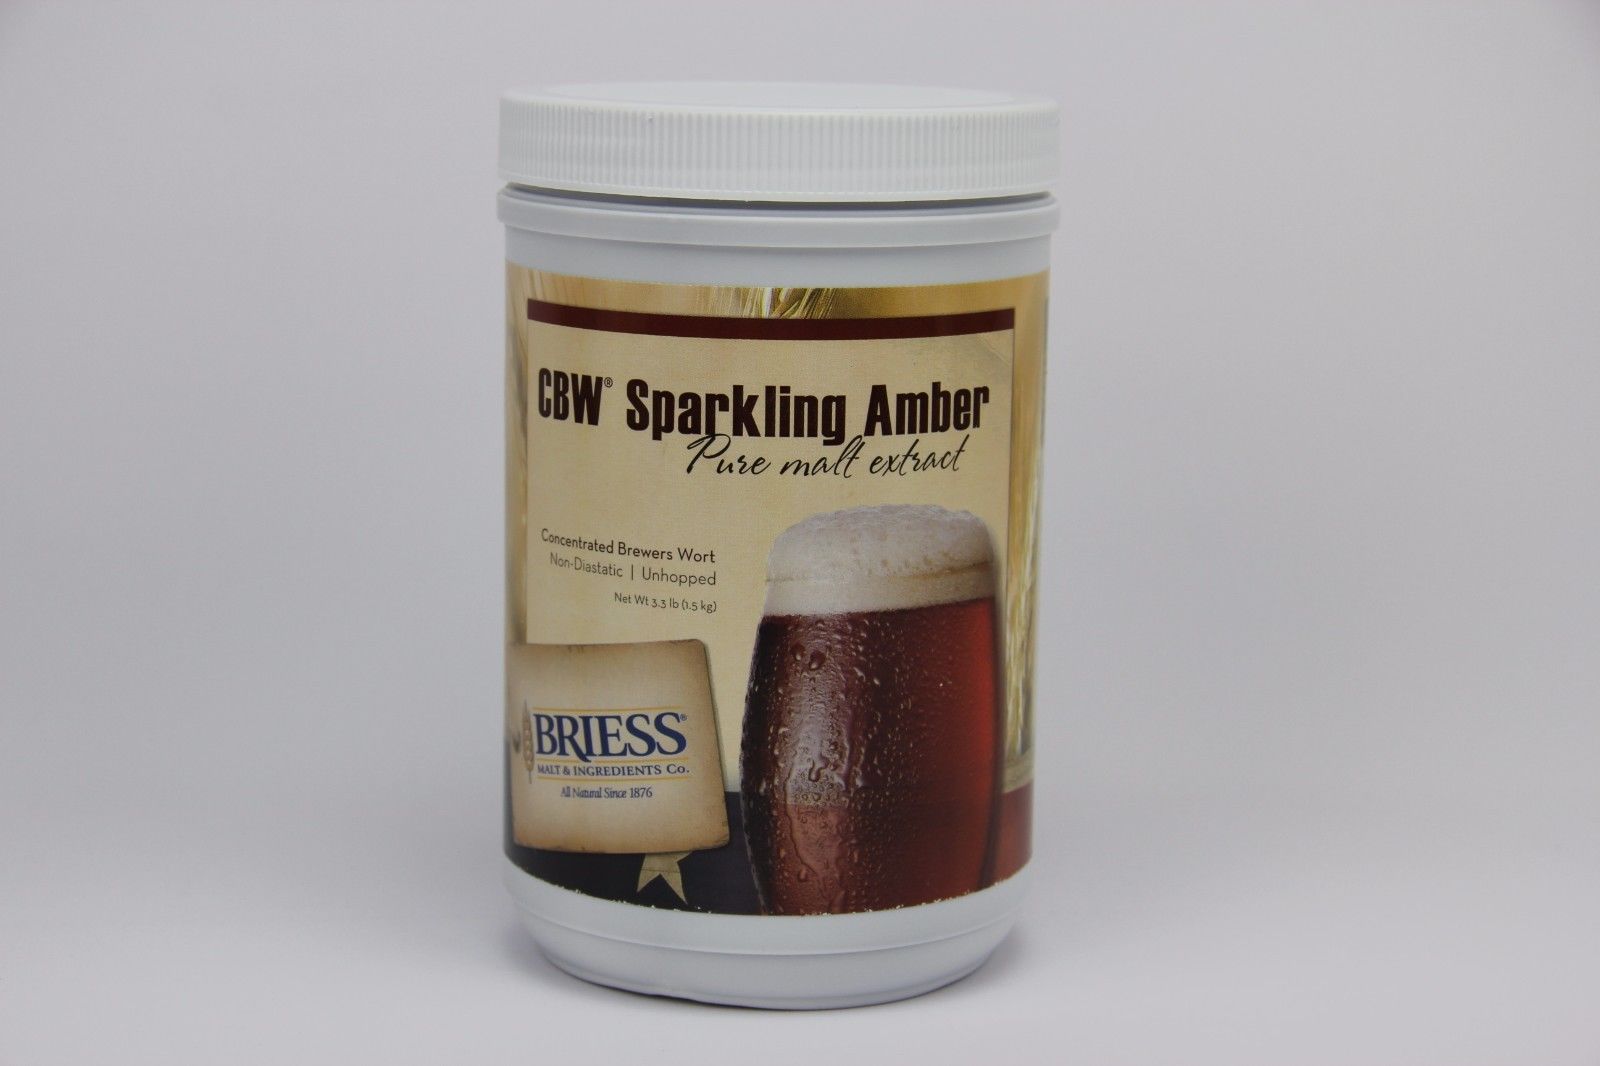 Extrait de malt Sparkling Amber LME - DME